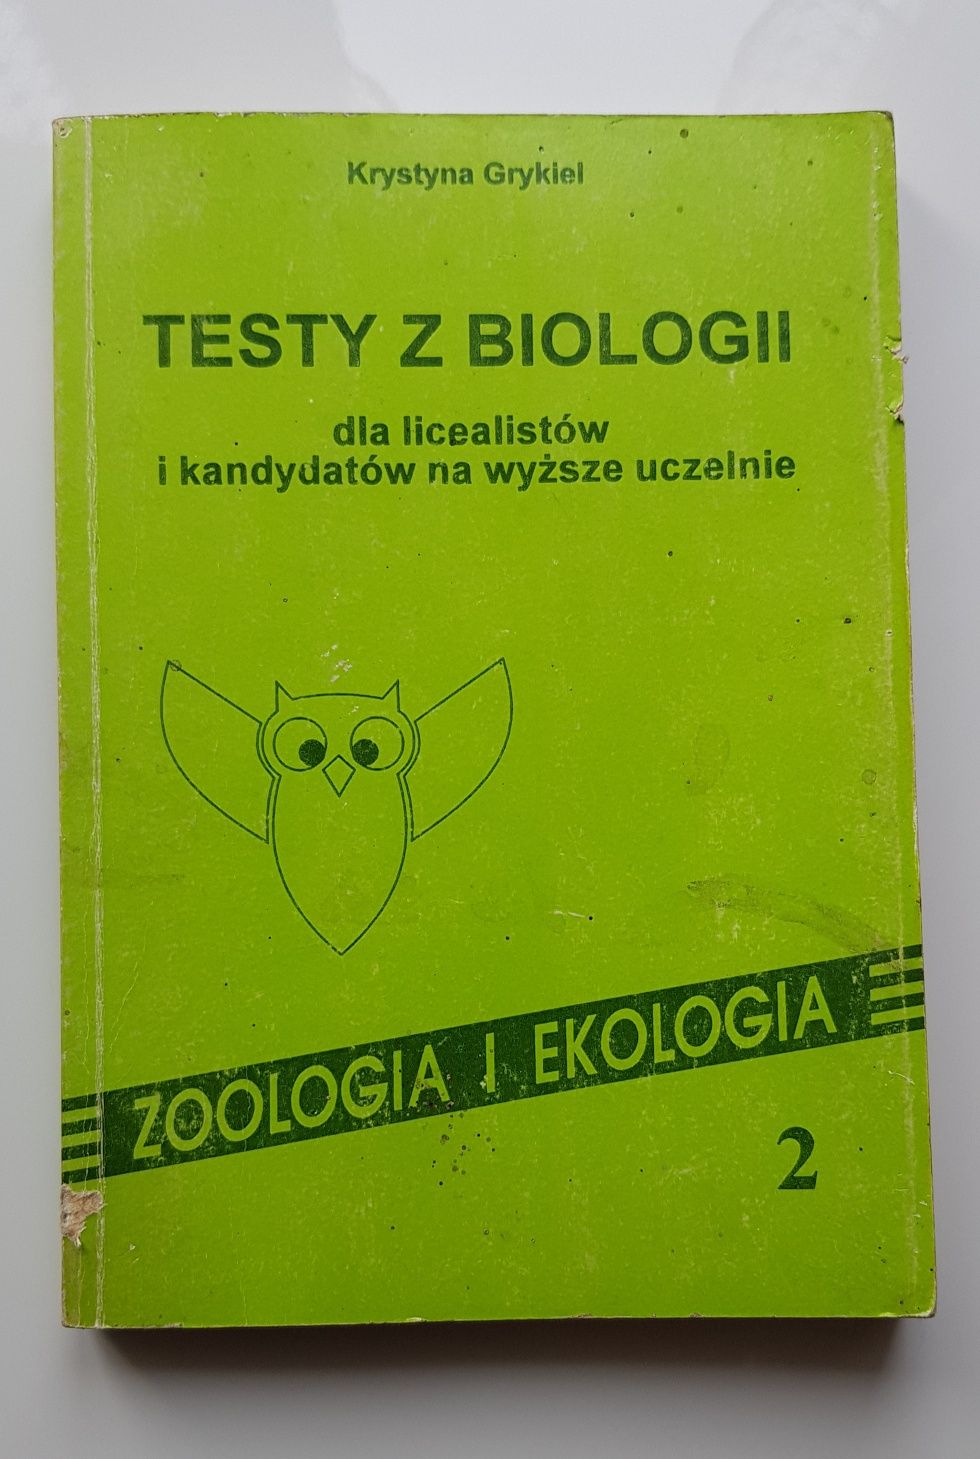 Testy z biologii dla licealistów zoologia i ekologia Krystyna Grykiel